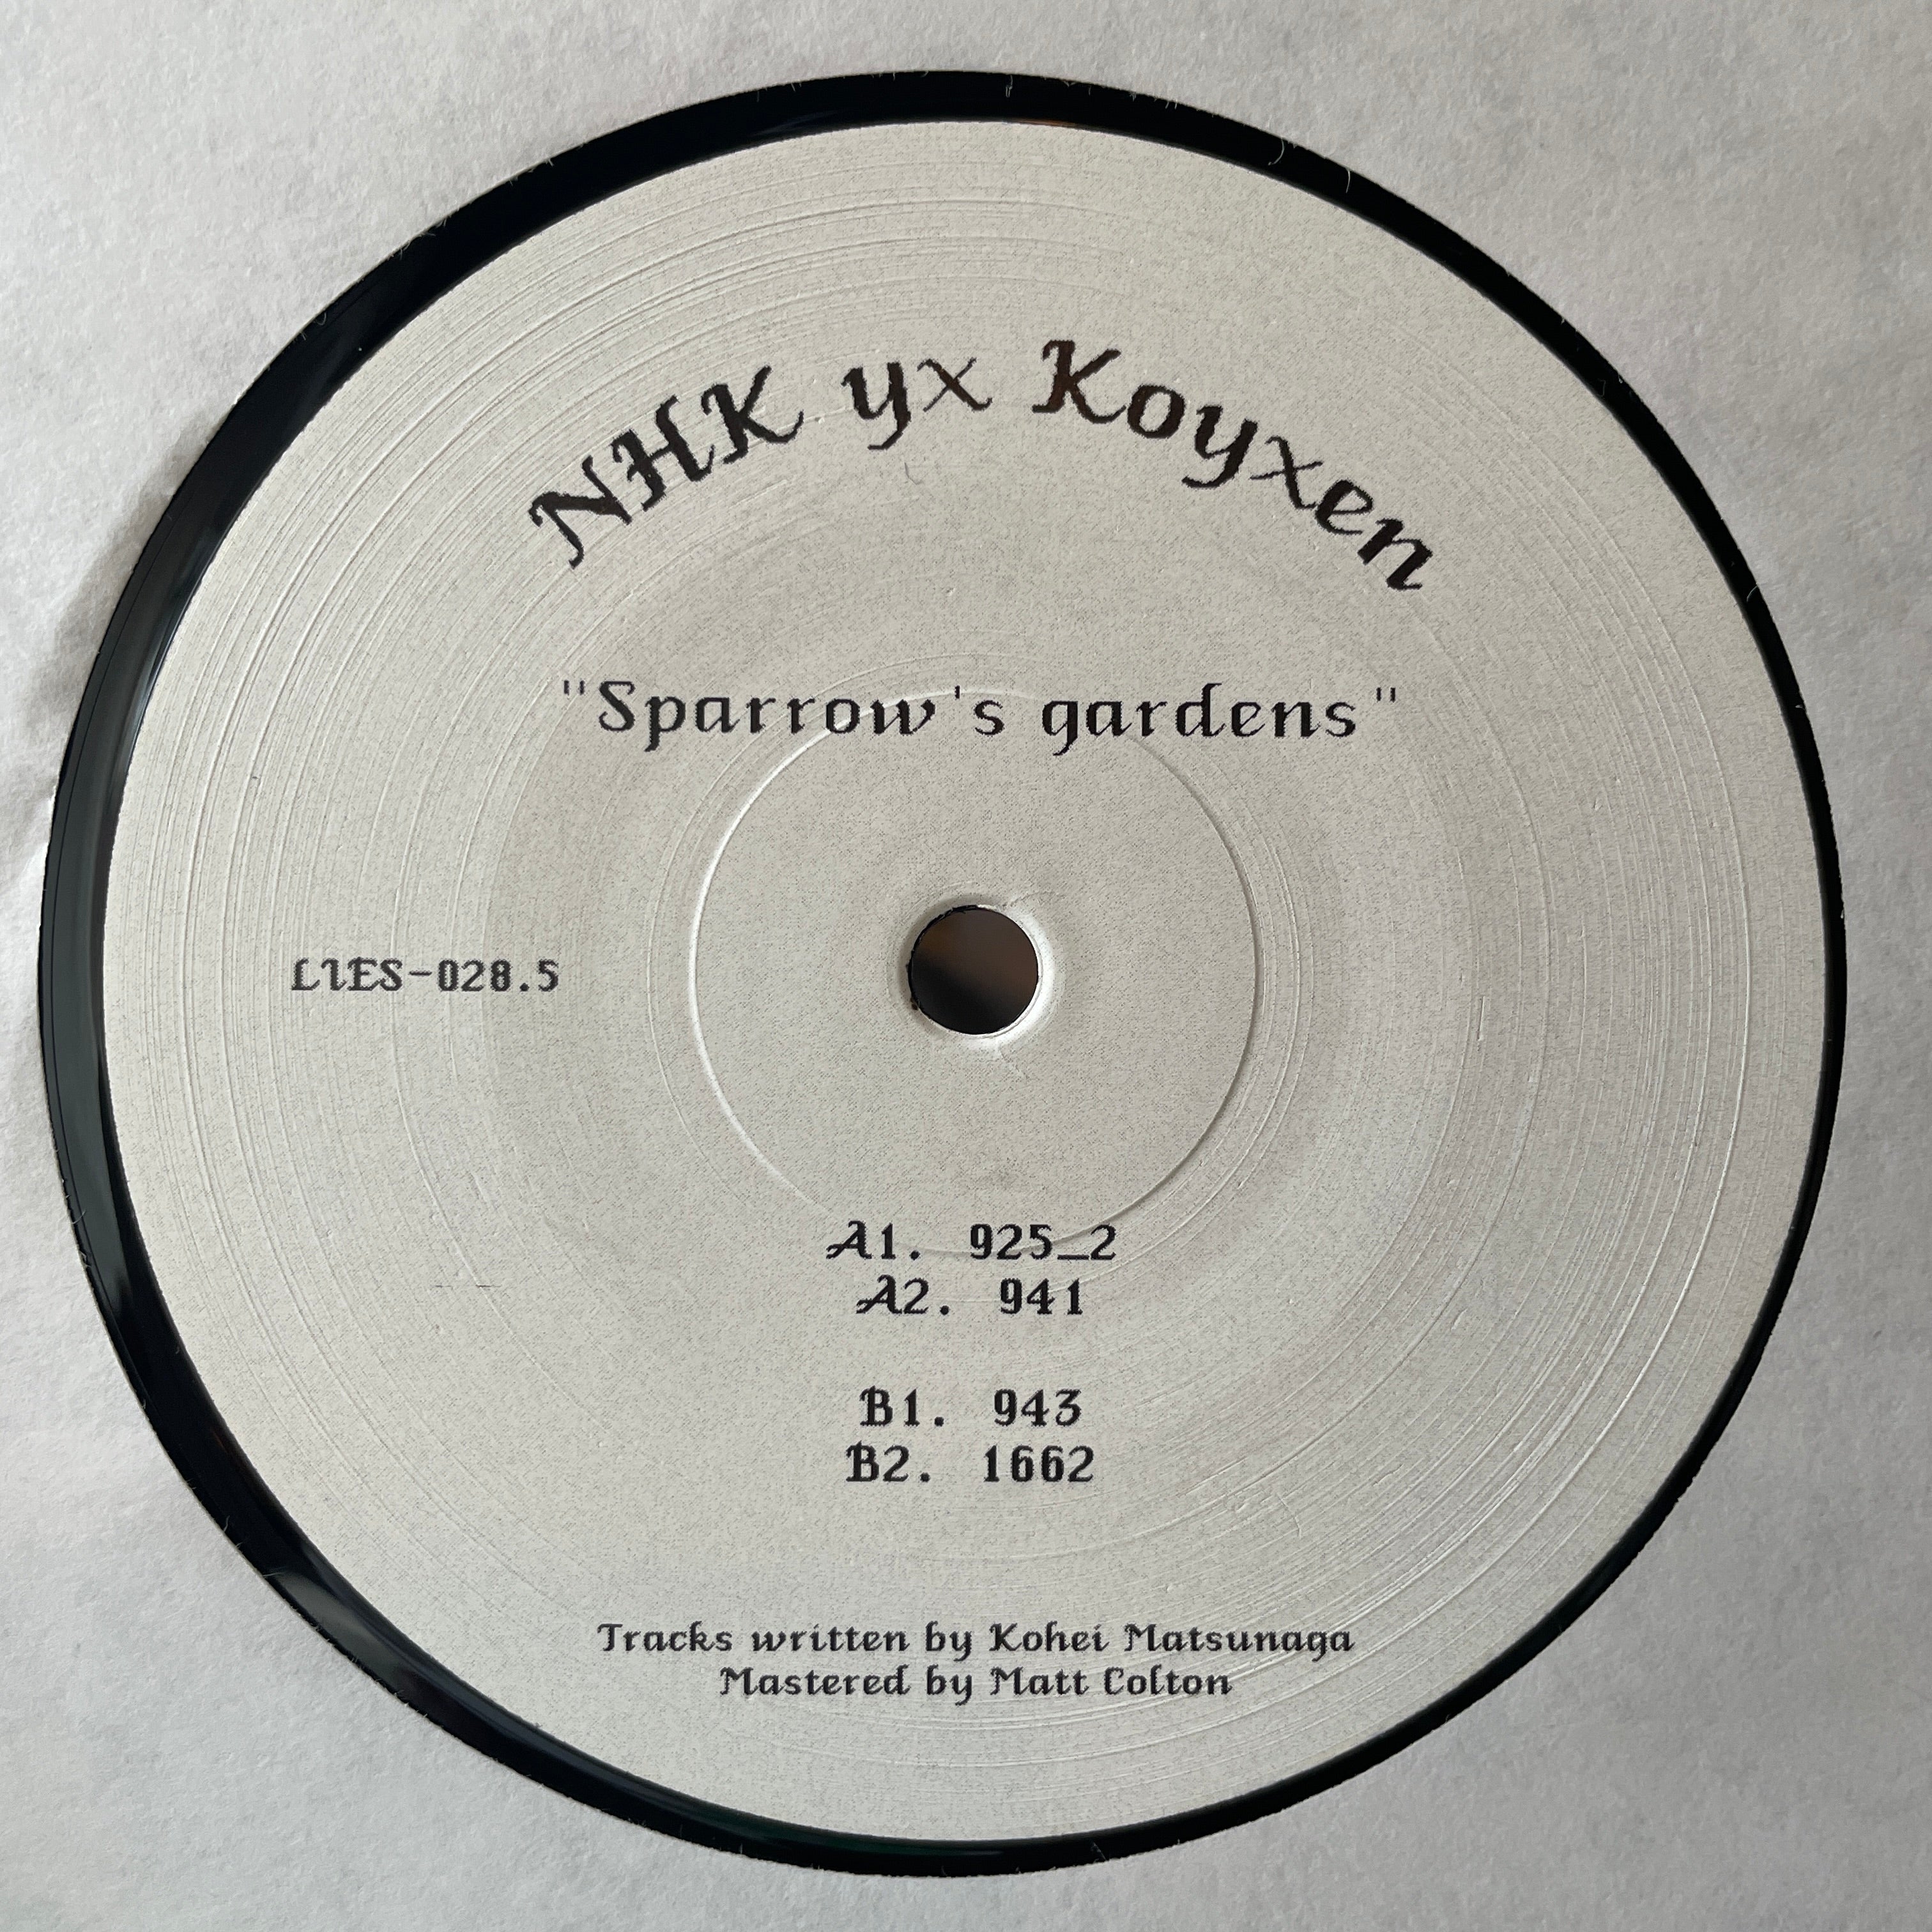 NHK yx Koyxen ‎– Sparrow's Gardens – Sixth Garden Records